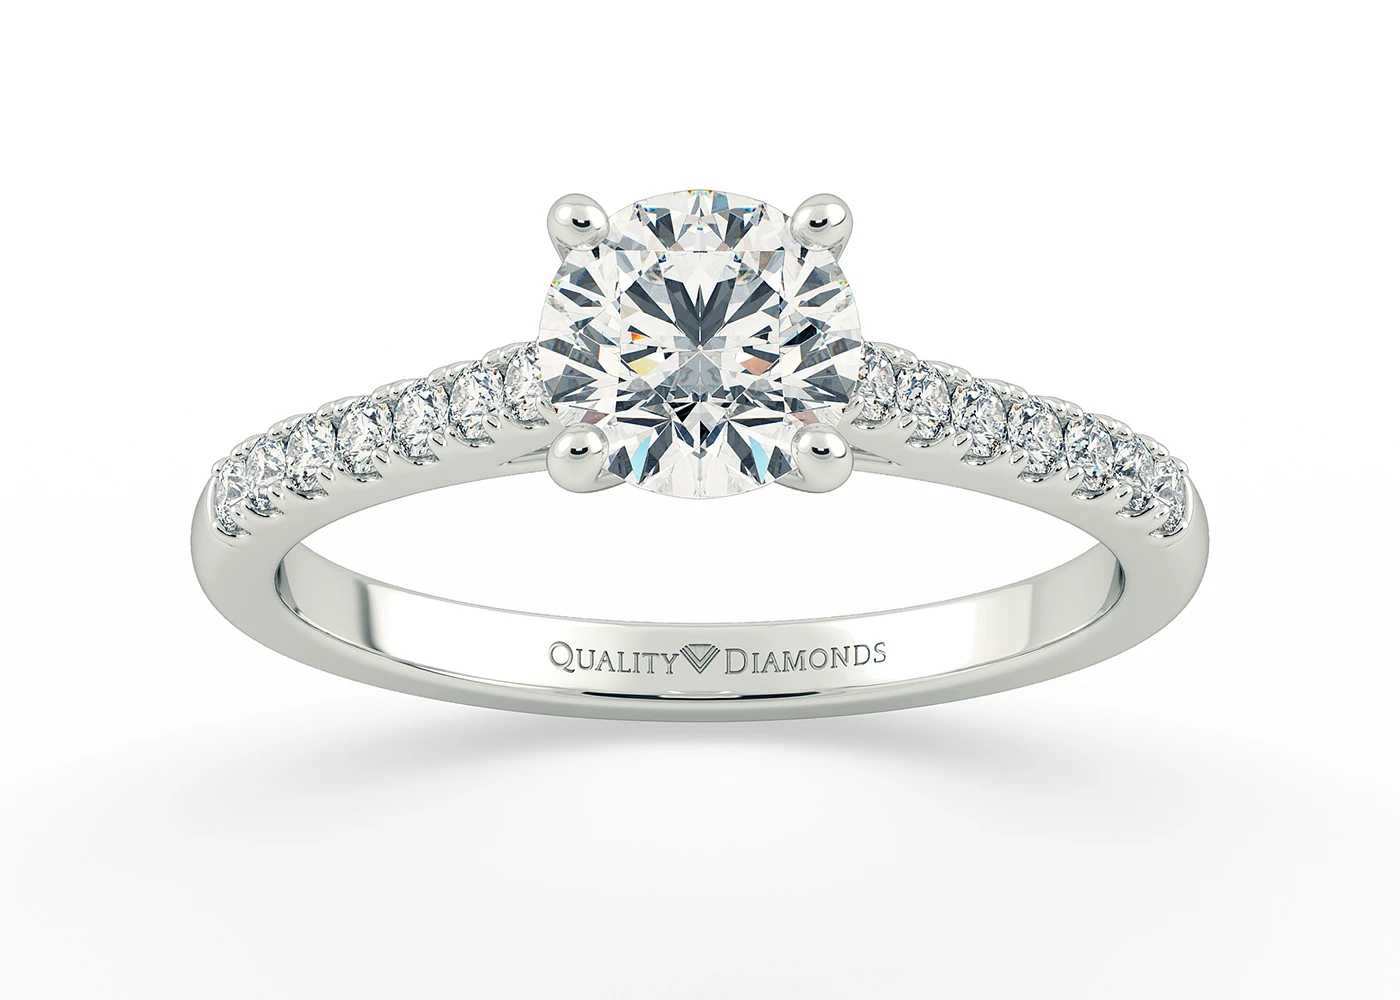 Two Carat Round Brilliant Diamond Set Diamond Engagement Ring in Platinum 950